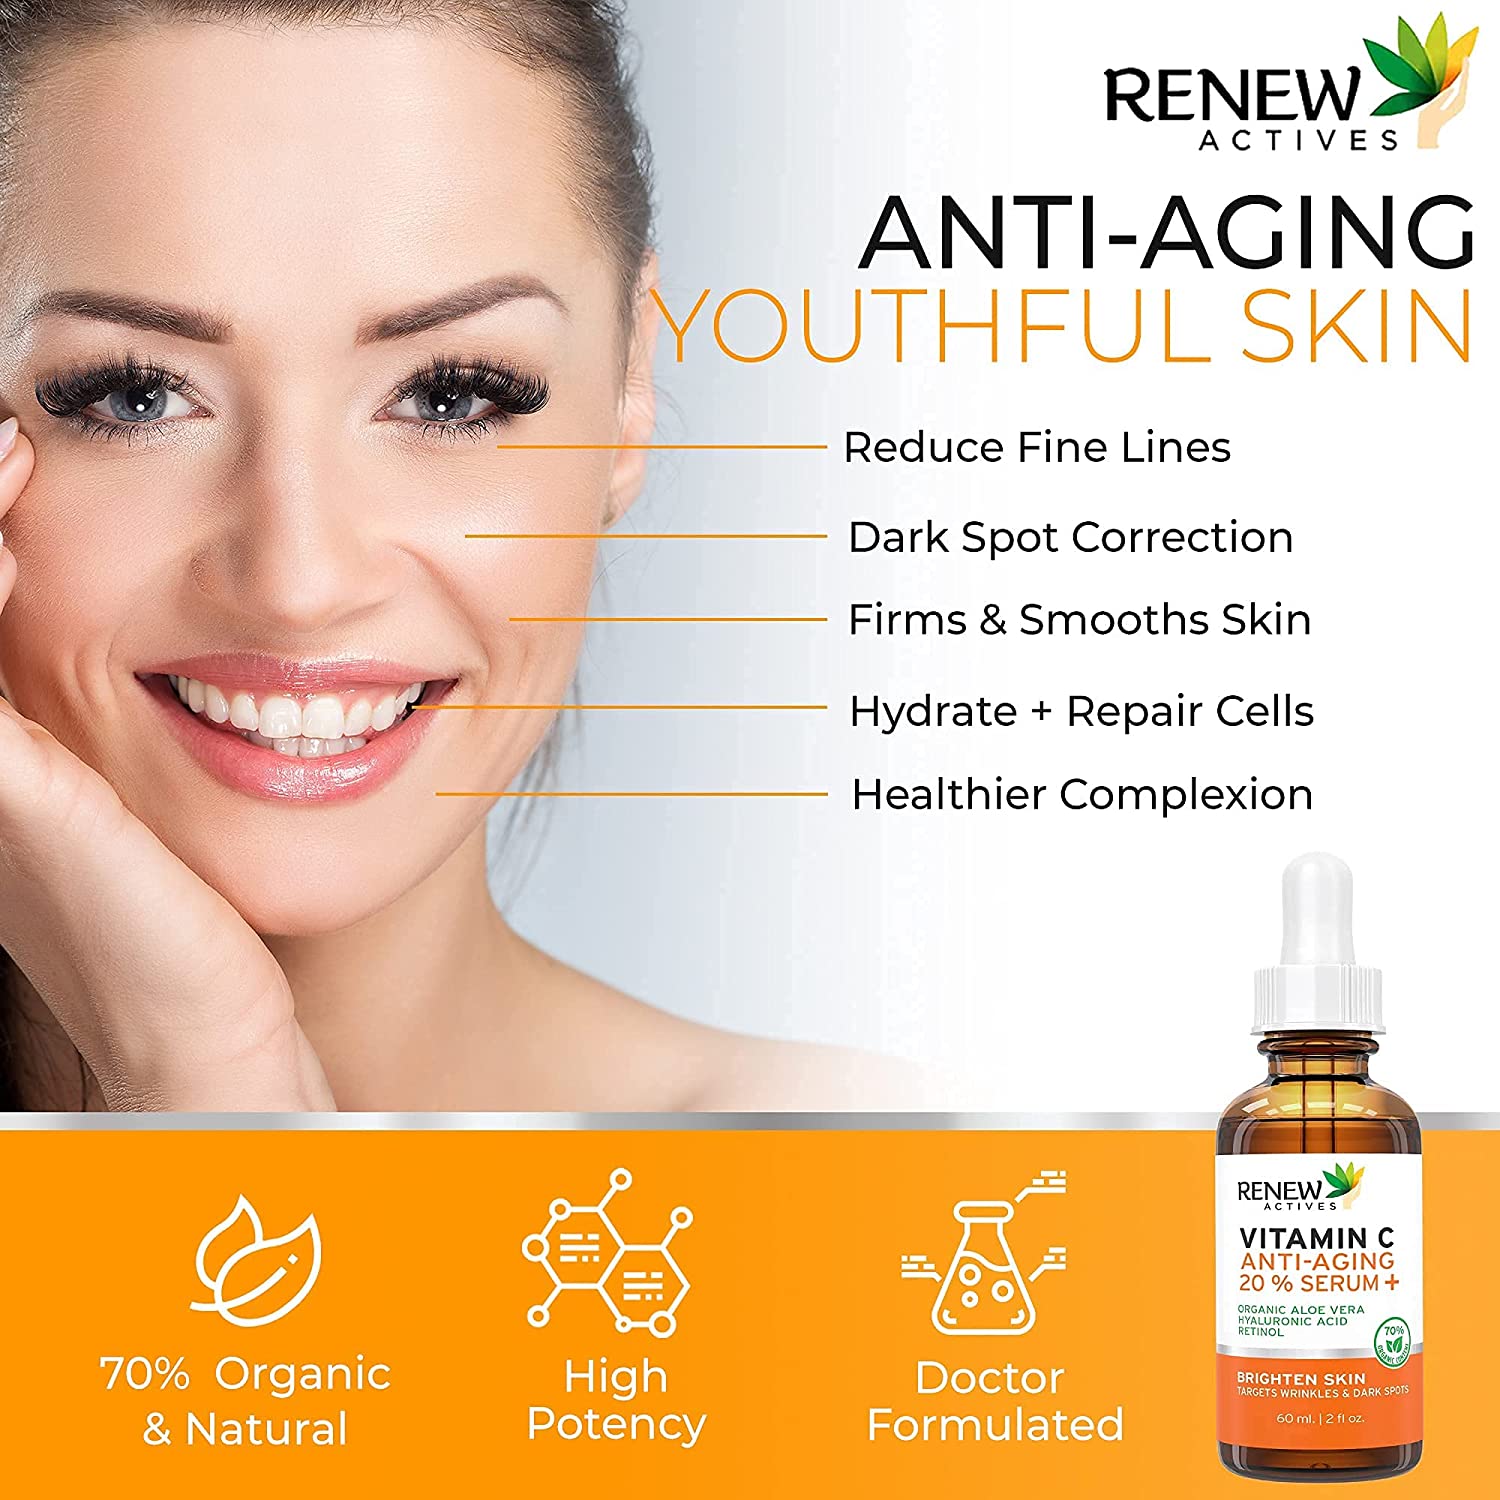 Renew Actives Vitamin C Serum – Anti-Aging Serum with Vitamin C, Hyaluronic Acid and Retinol